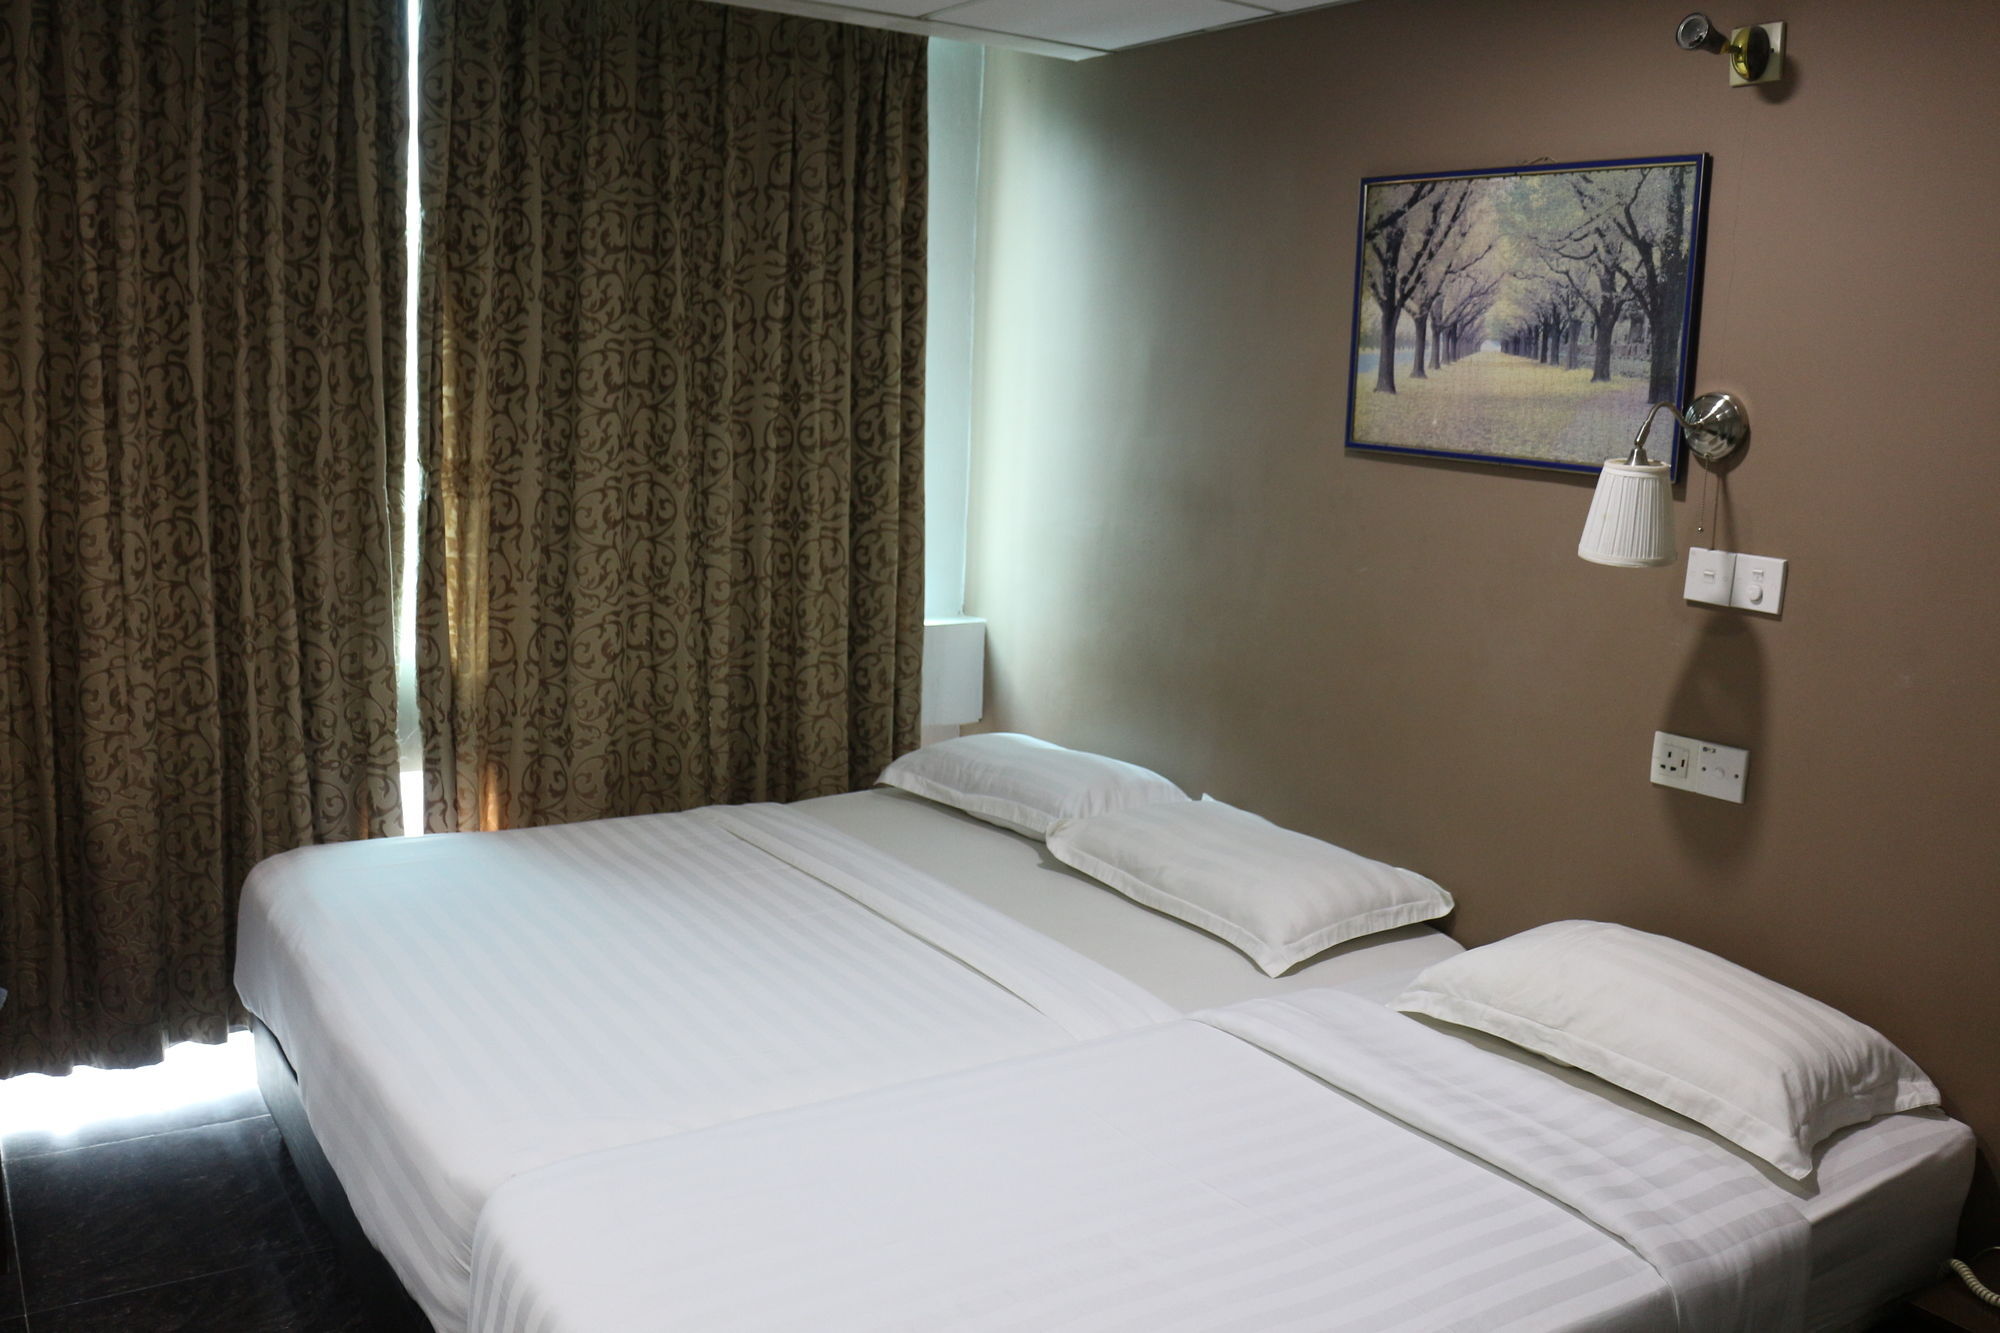 Subang Park Hotel Subang Jaya Exterior photo